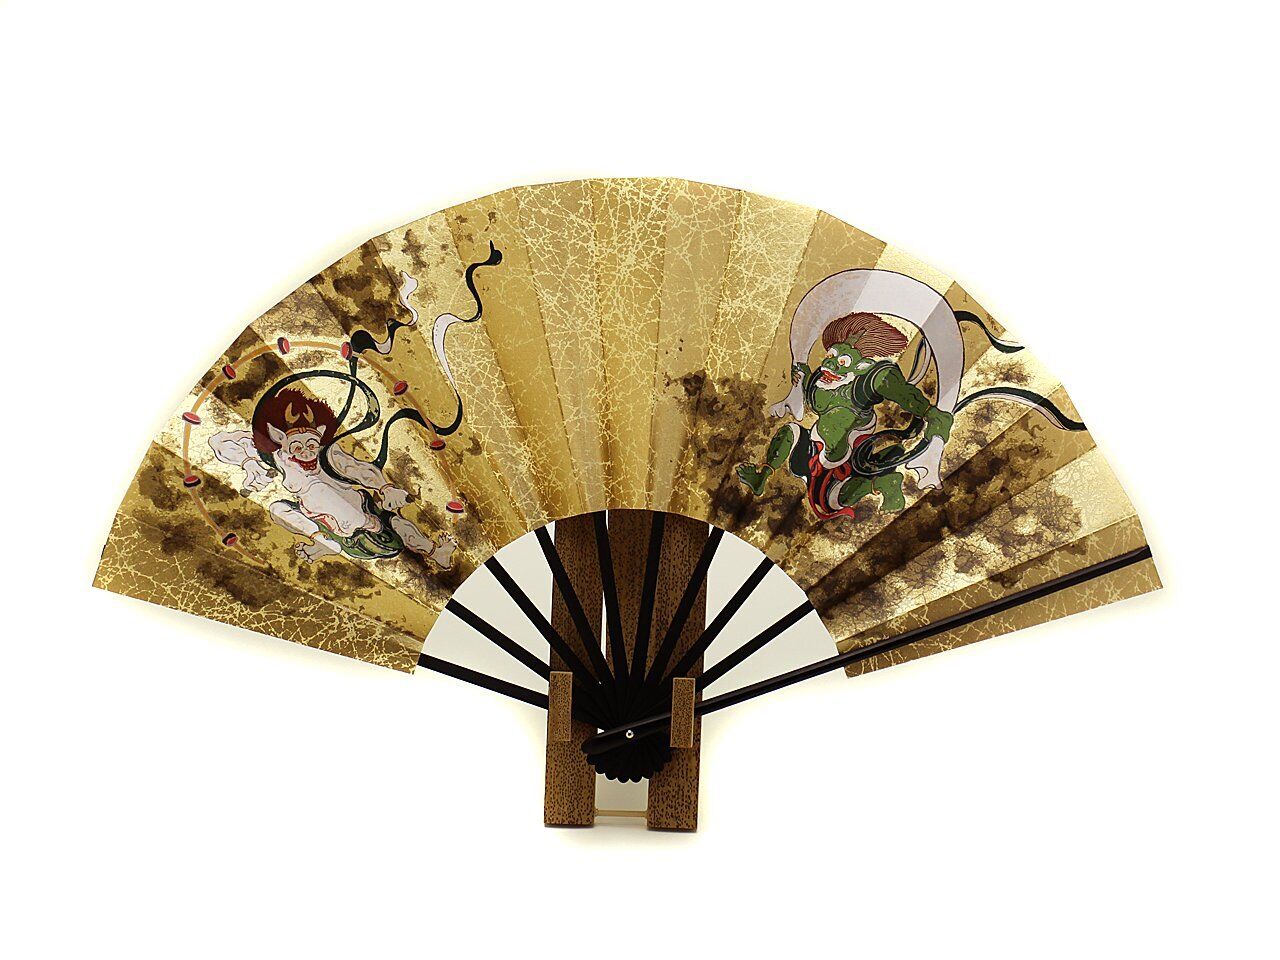 Kyoto fan, decorative fan, Fujin Raijin, 9 inches, made in Japan, Kyoto, double-